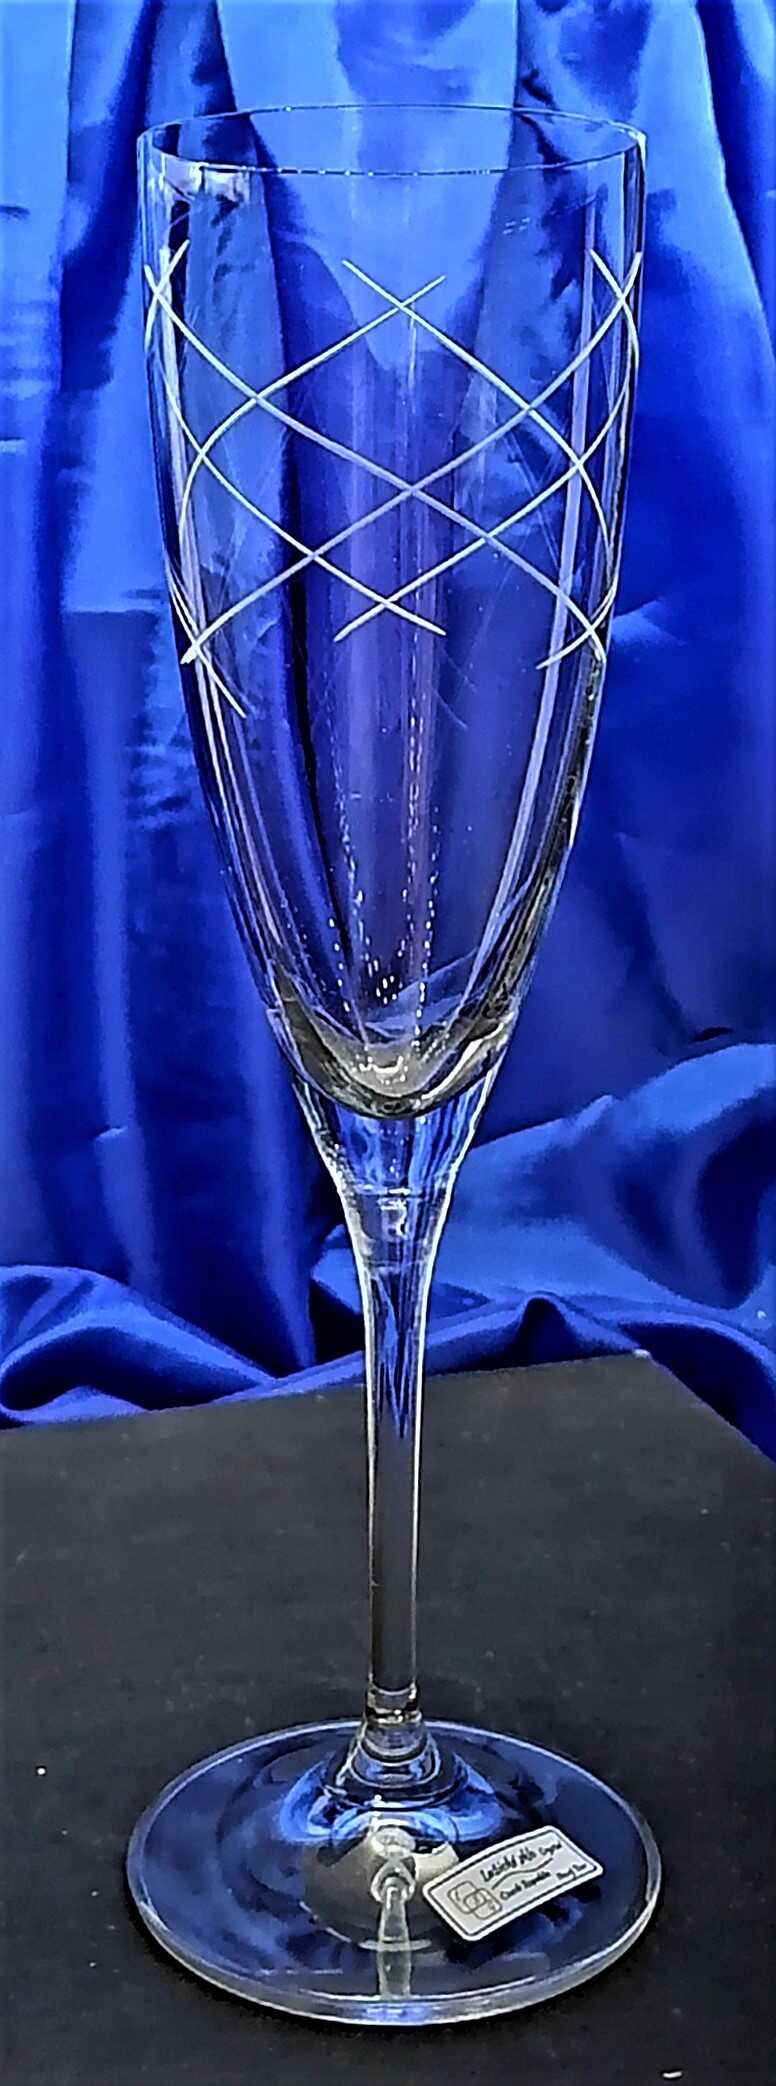 Sekt Glas/ Champagnergläser hand geschliffen Muster Galaxie Kate-349 220 ml 2 Stk.